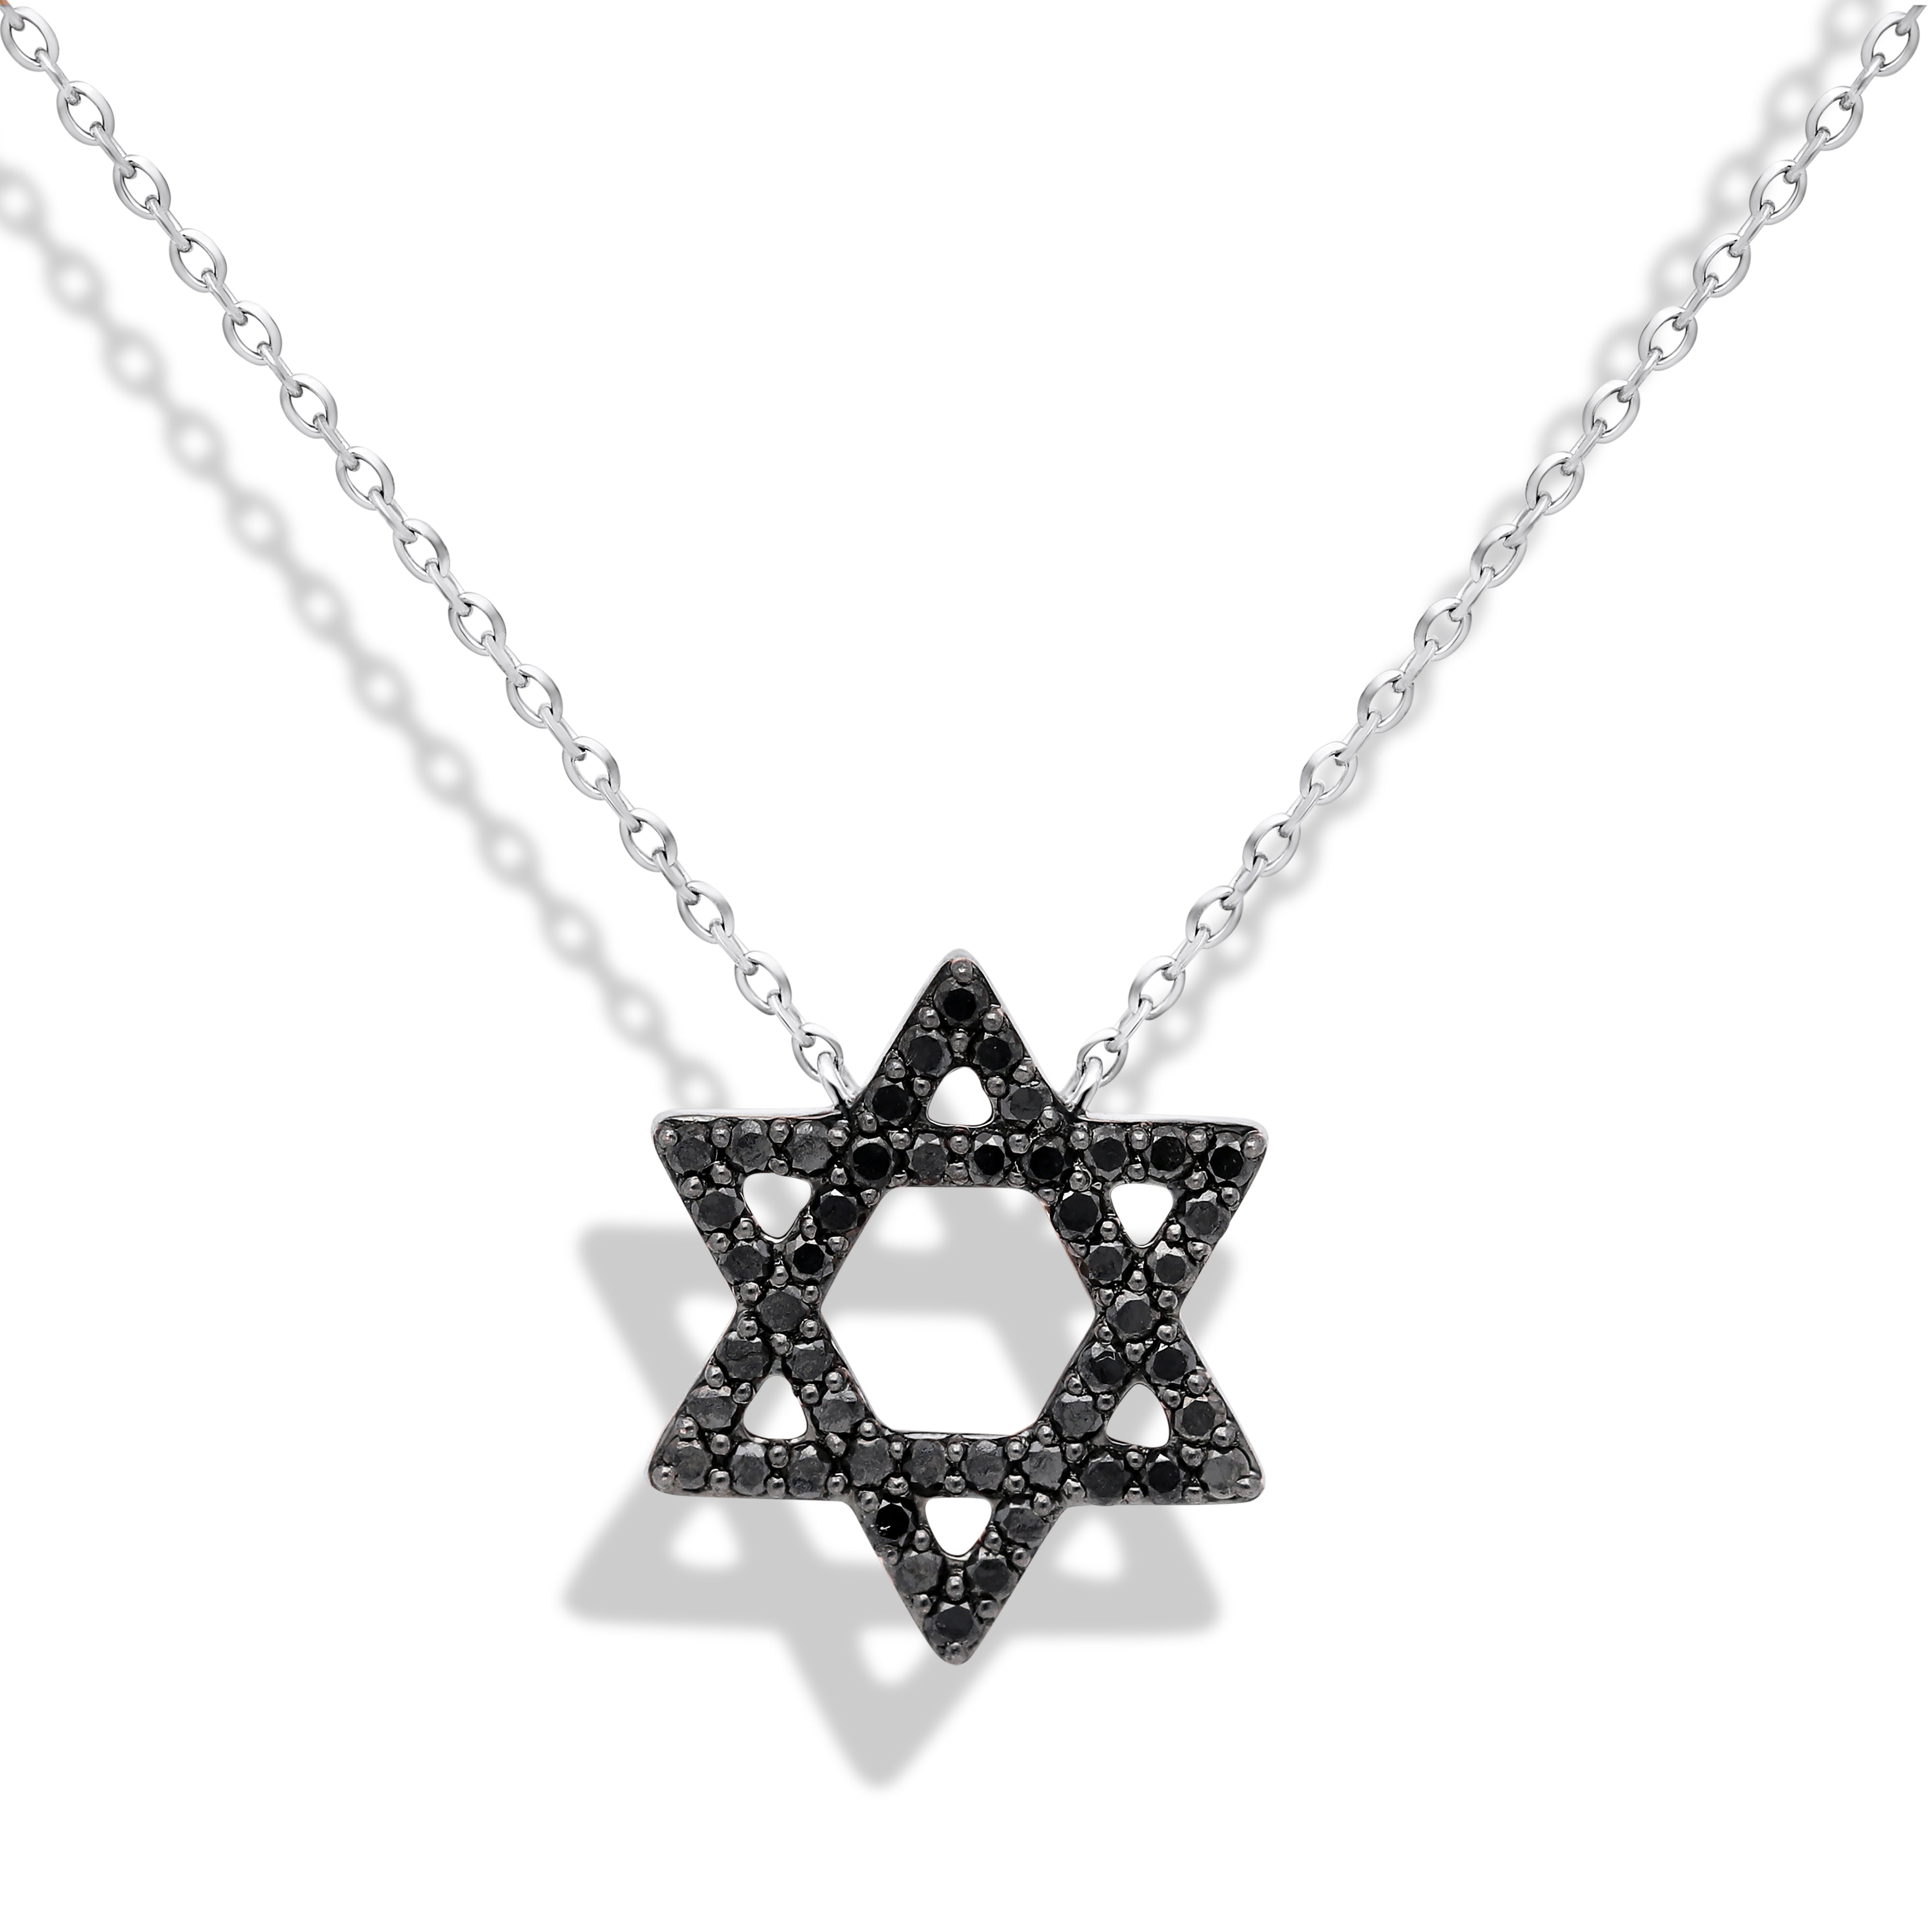 The Black Diamond Mazel Necklace